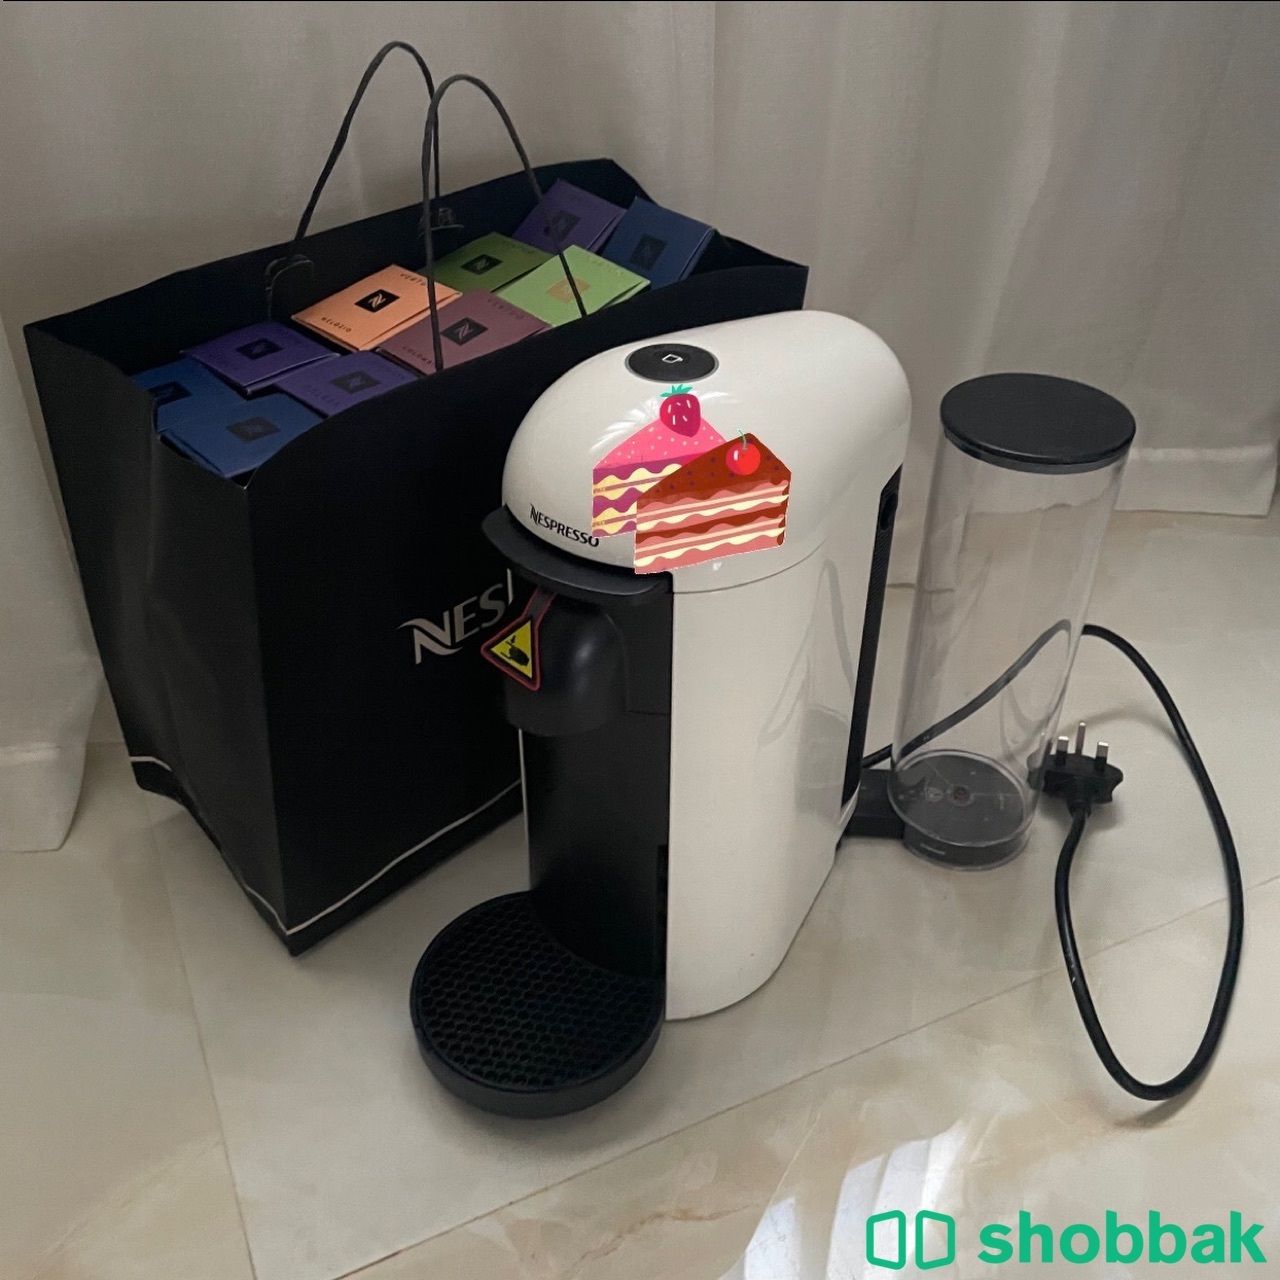 آلة قهوة فيرتو بلس من نسبريسو استخدام بسيط جداً  Shobbak Saudi Arabia